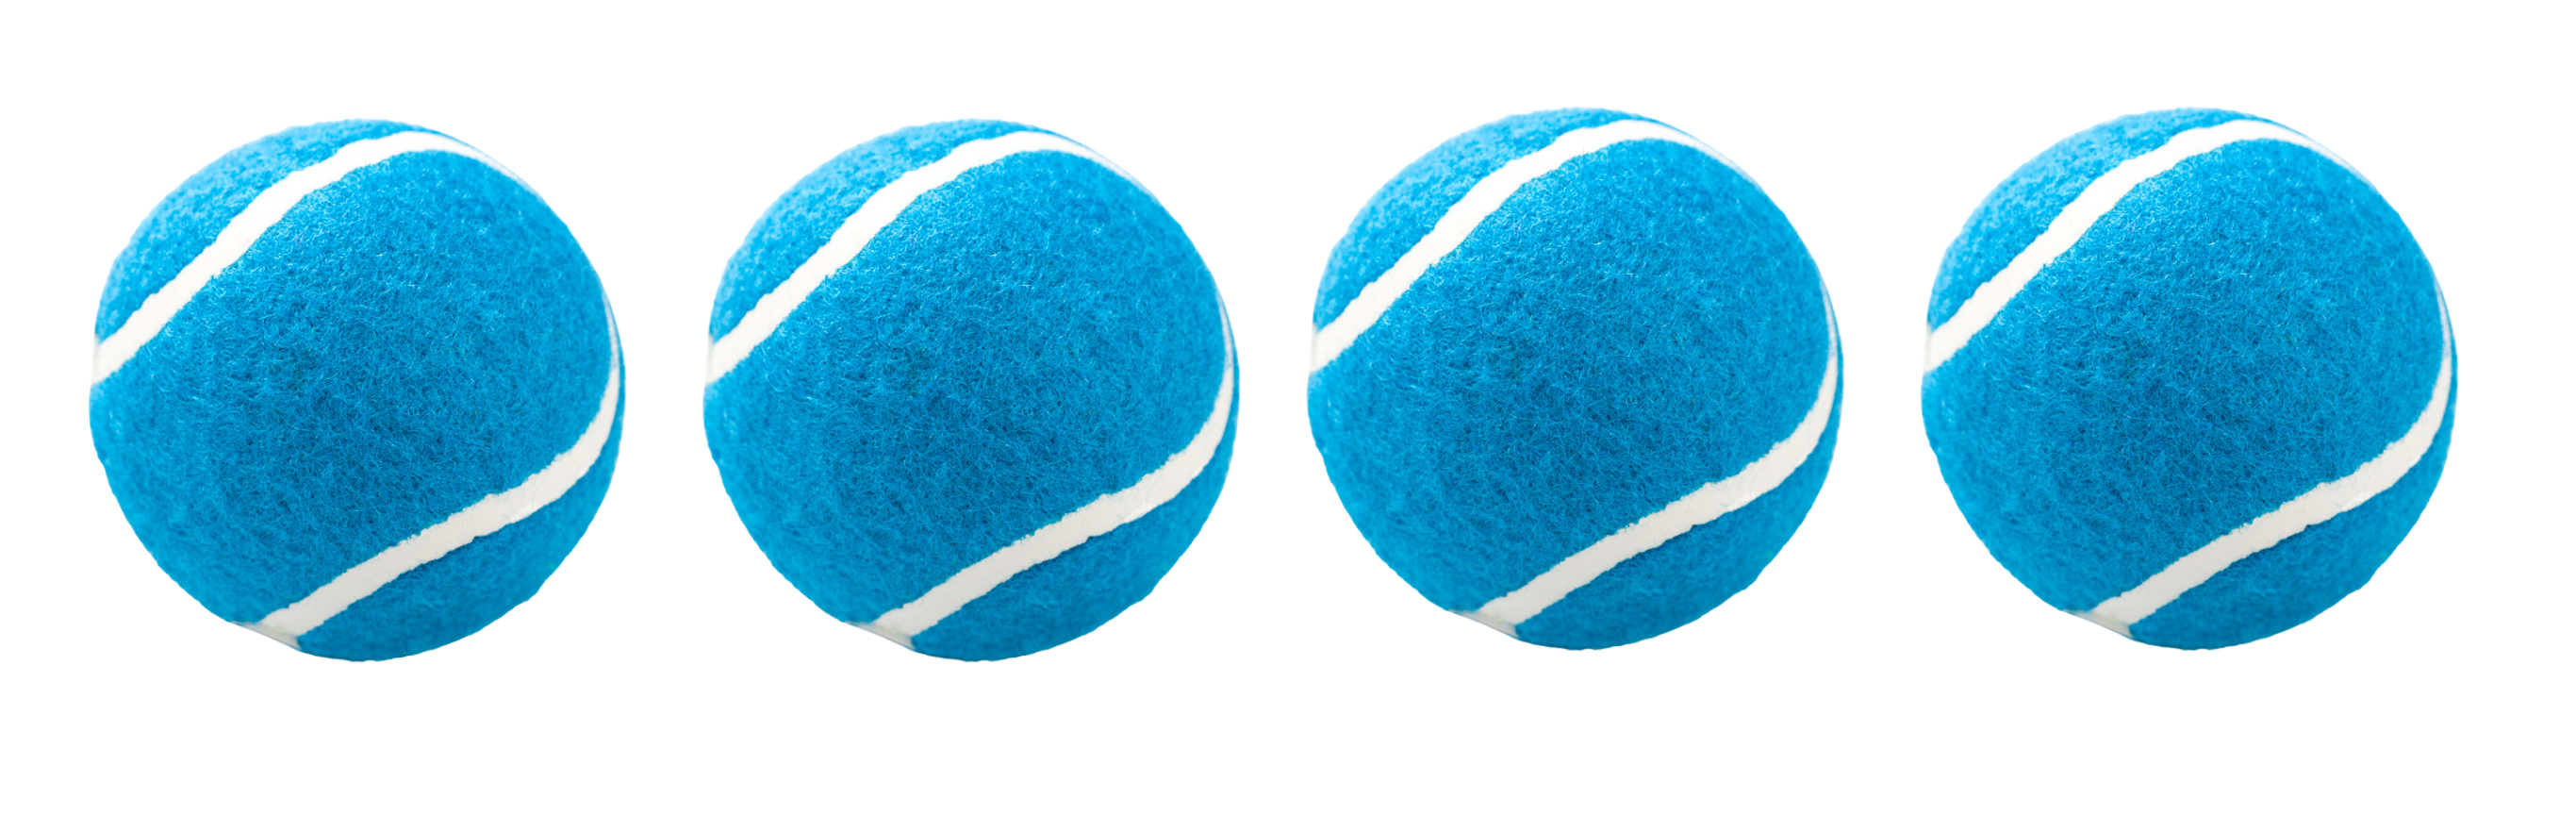 What do you do for blue balls